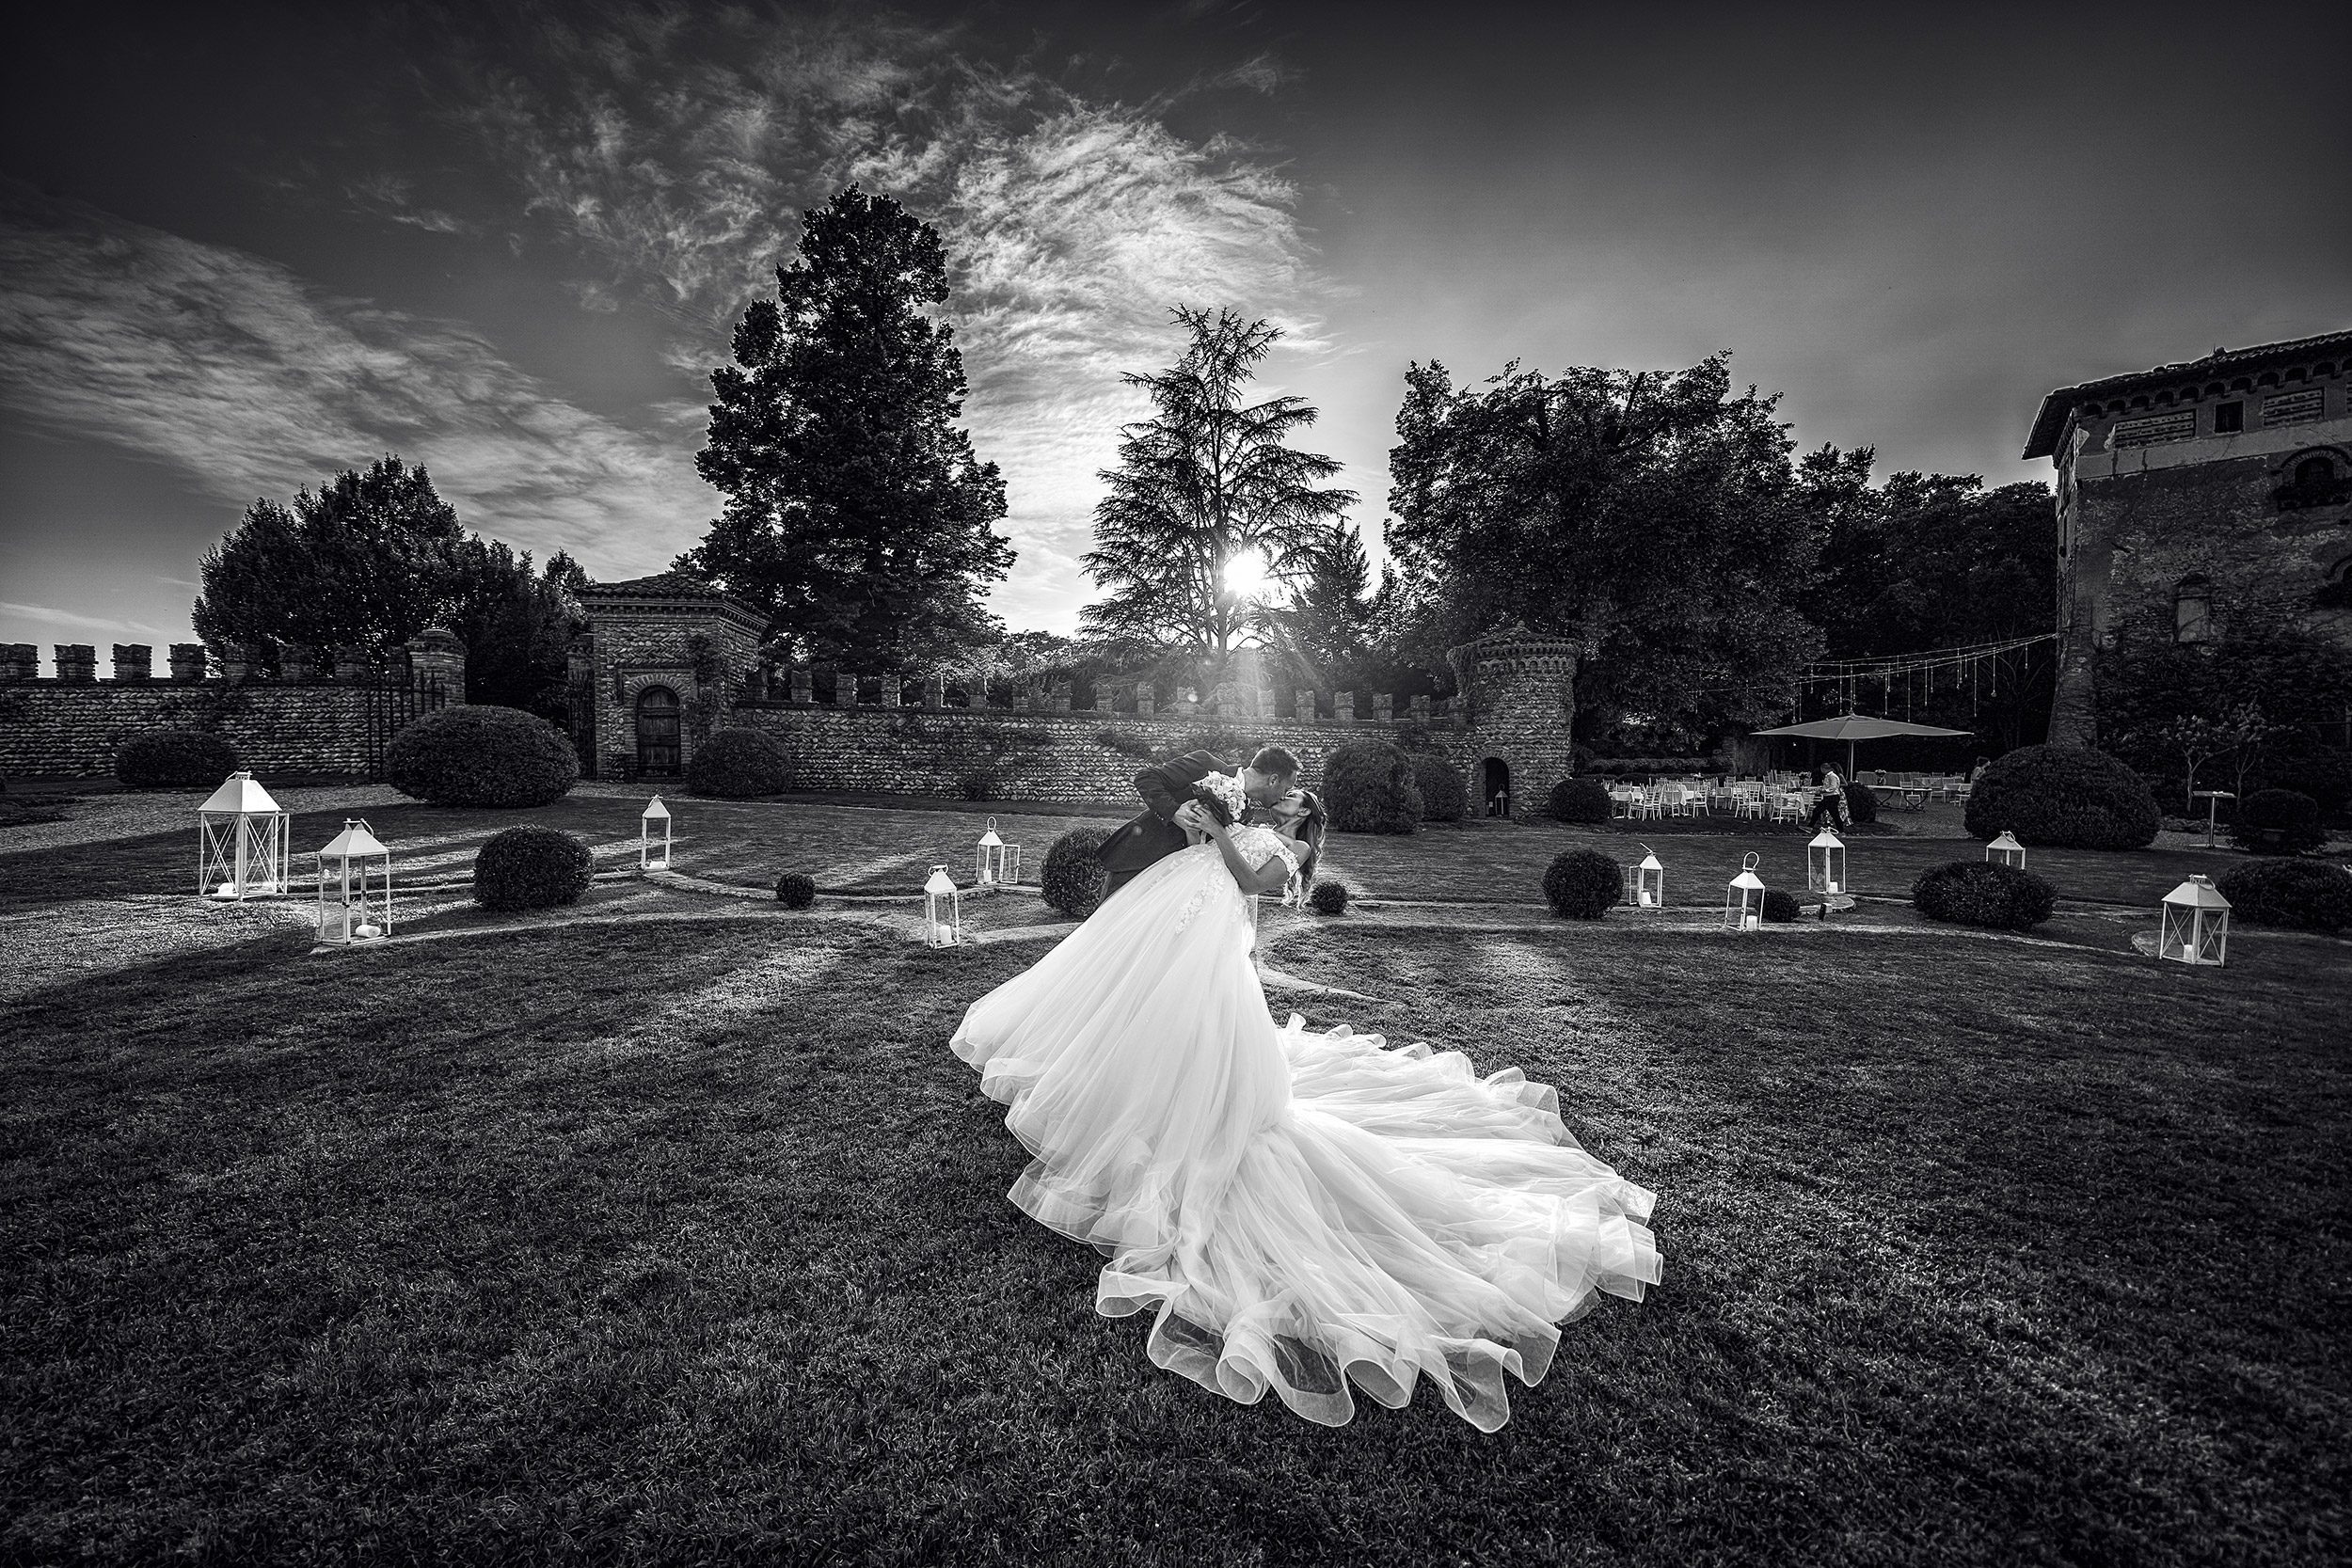 000 reportage foto matrimonio wedding ritratto sposi casquet bianco nero castello di marne filago bergamo 1